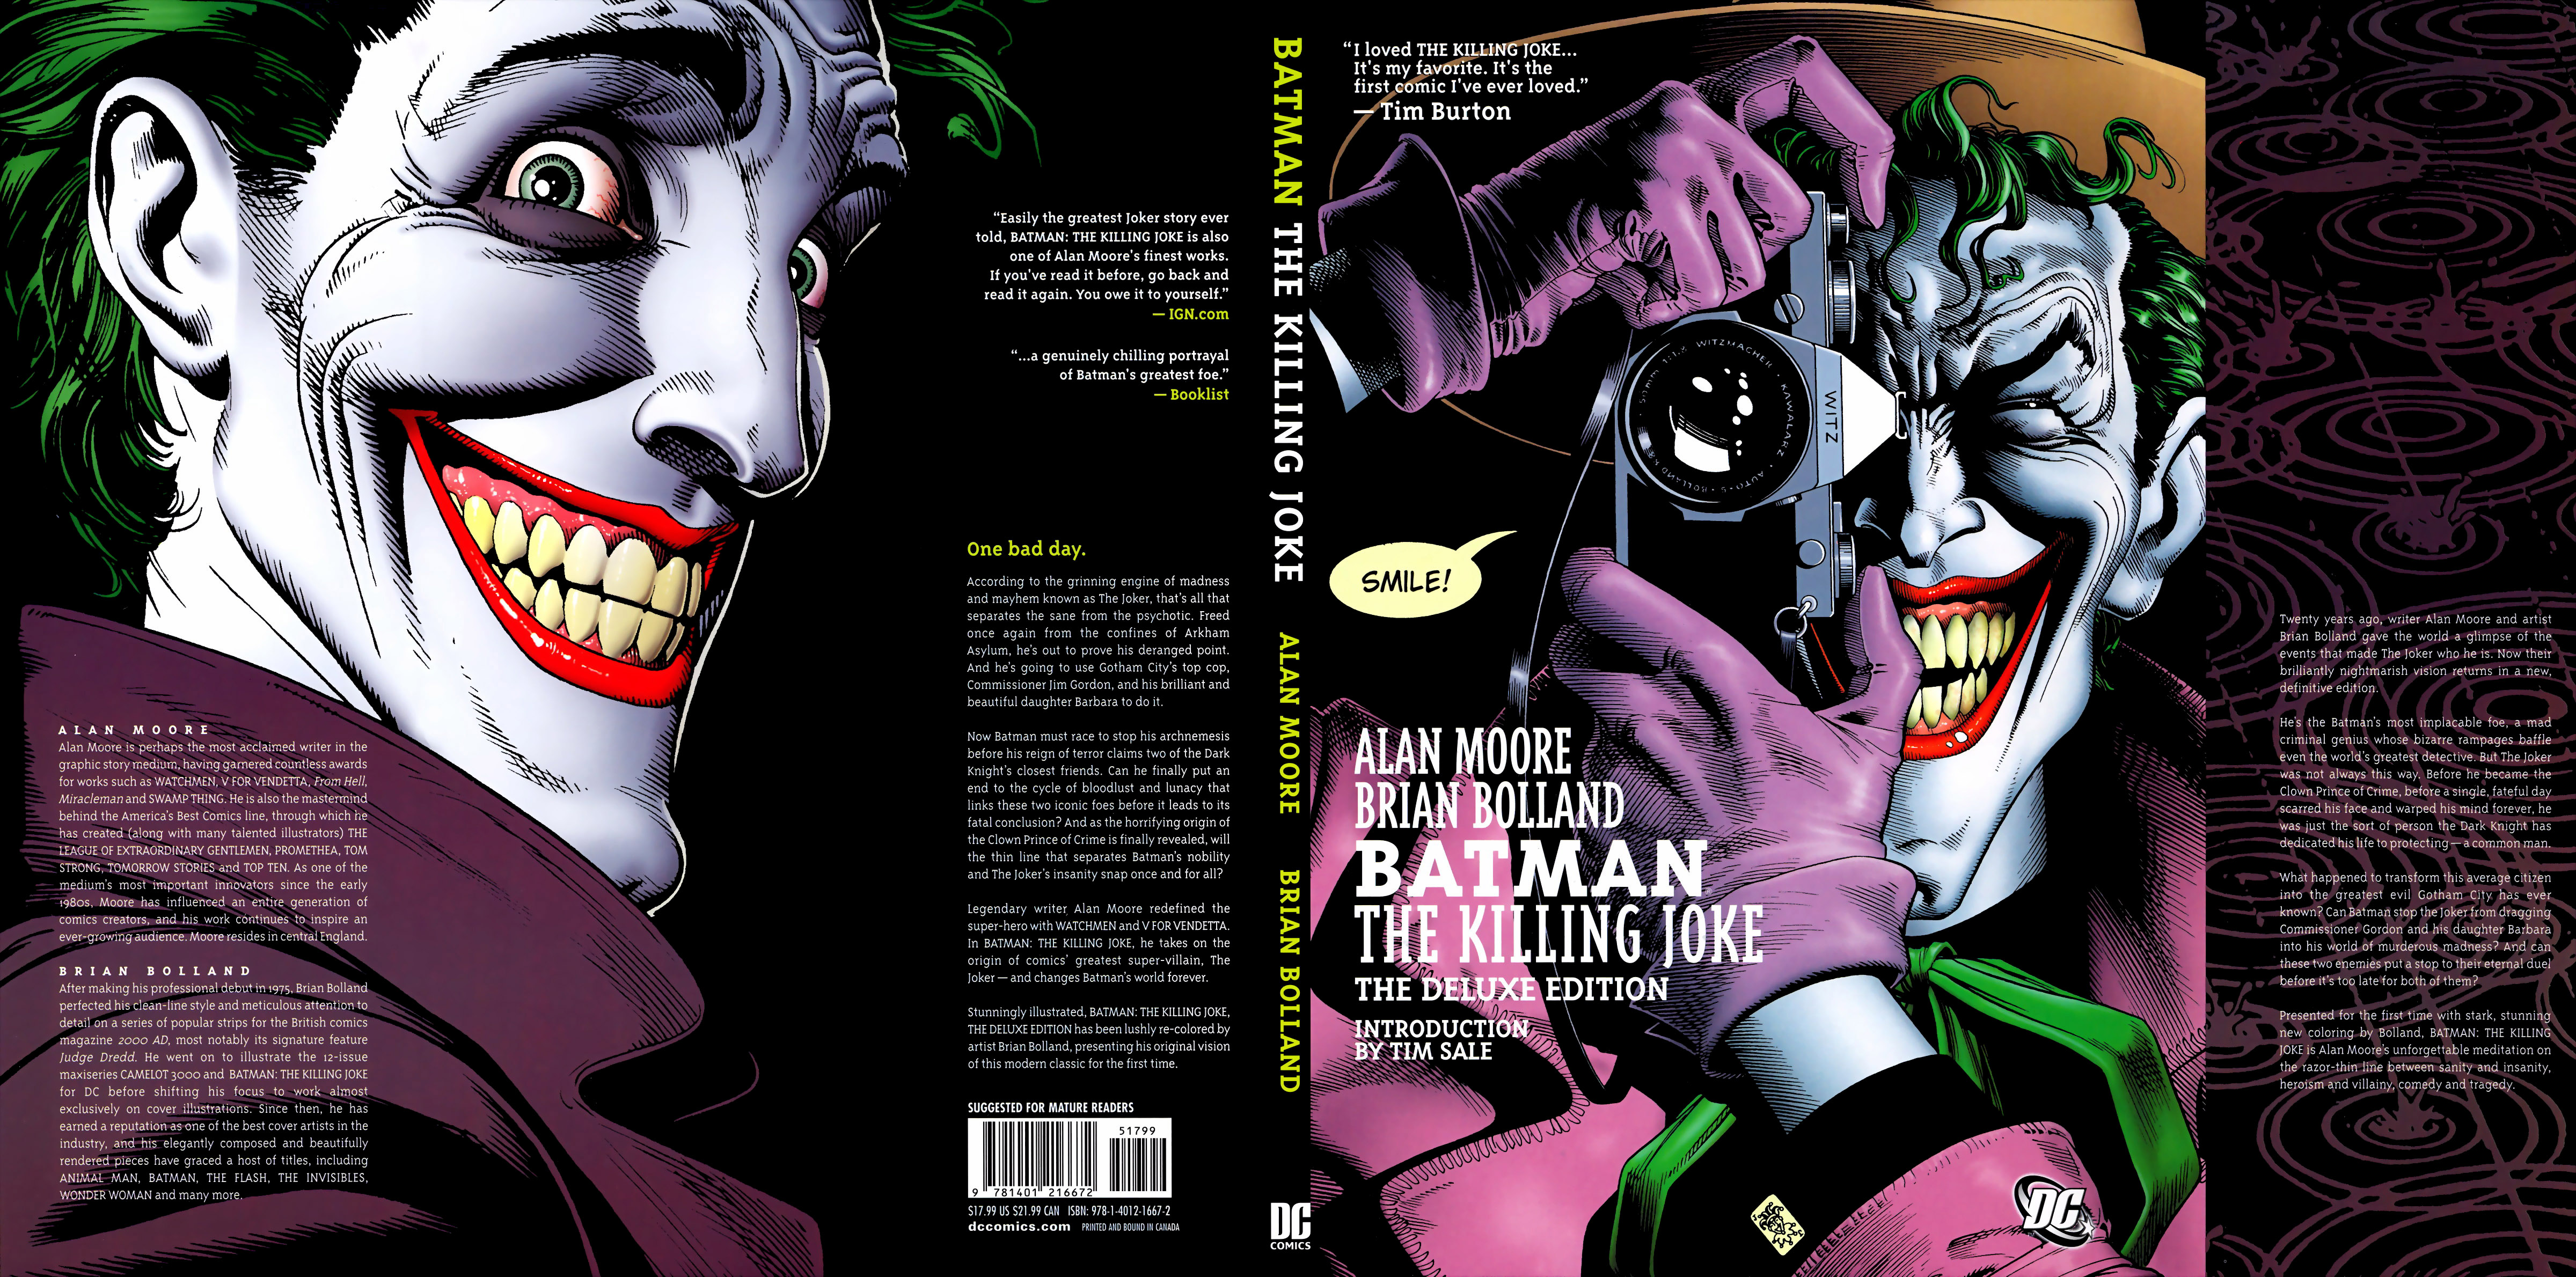 Read online Batman: The Killing Joke comic - Issue #1 - 2.